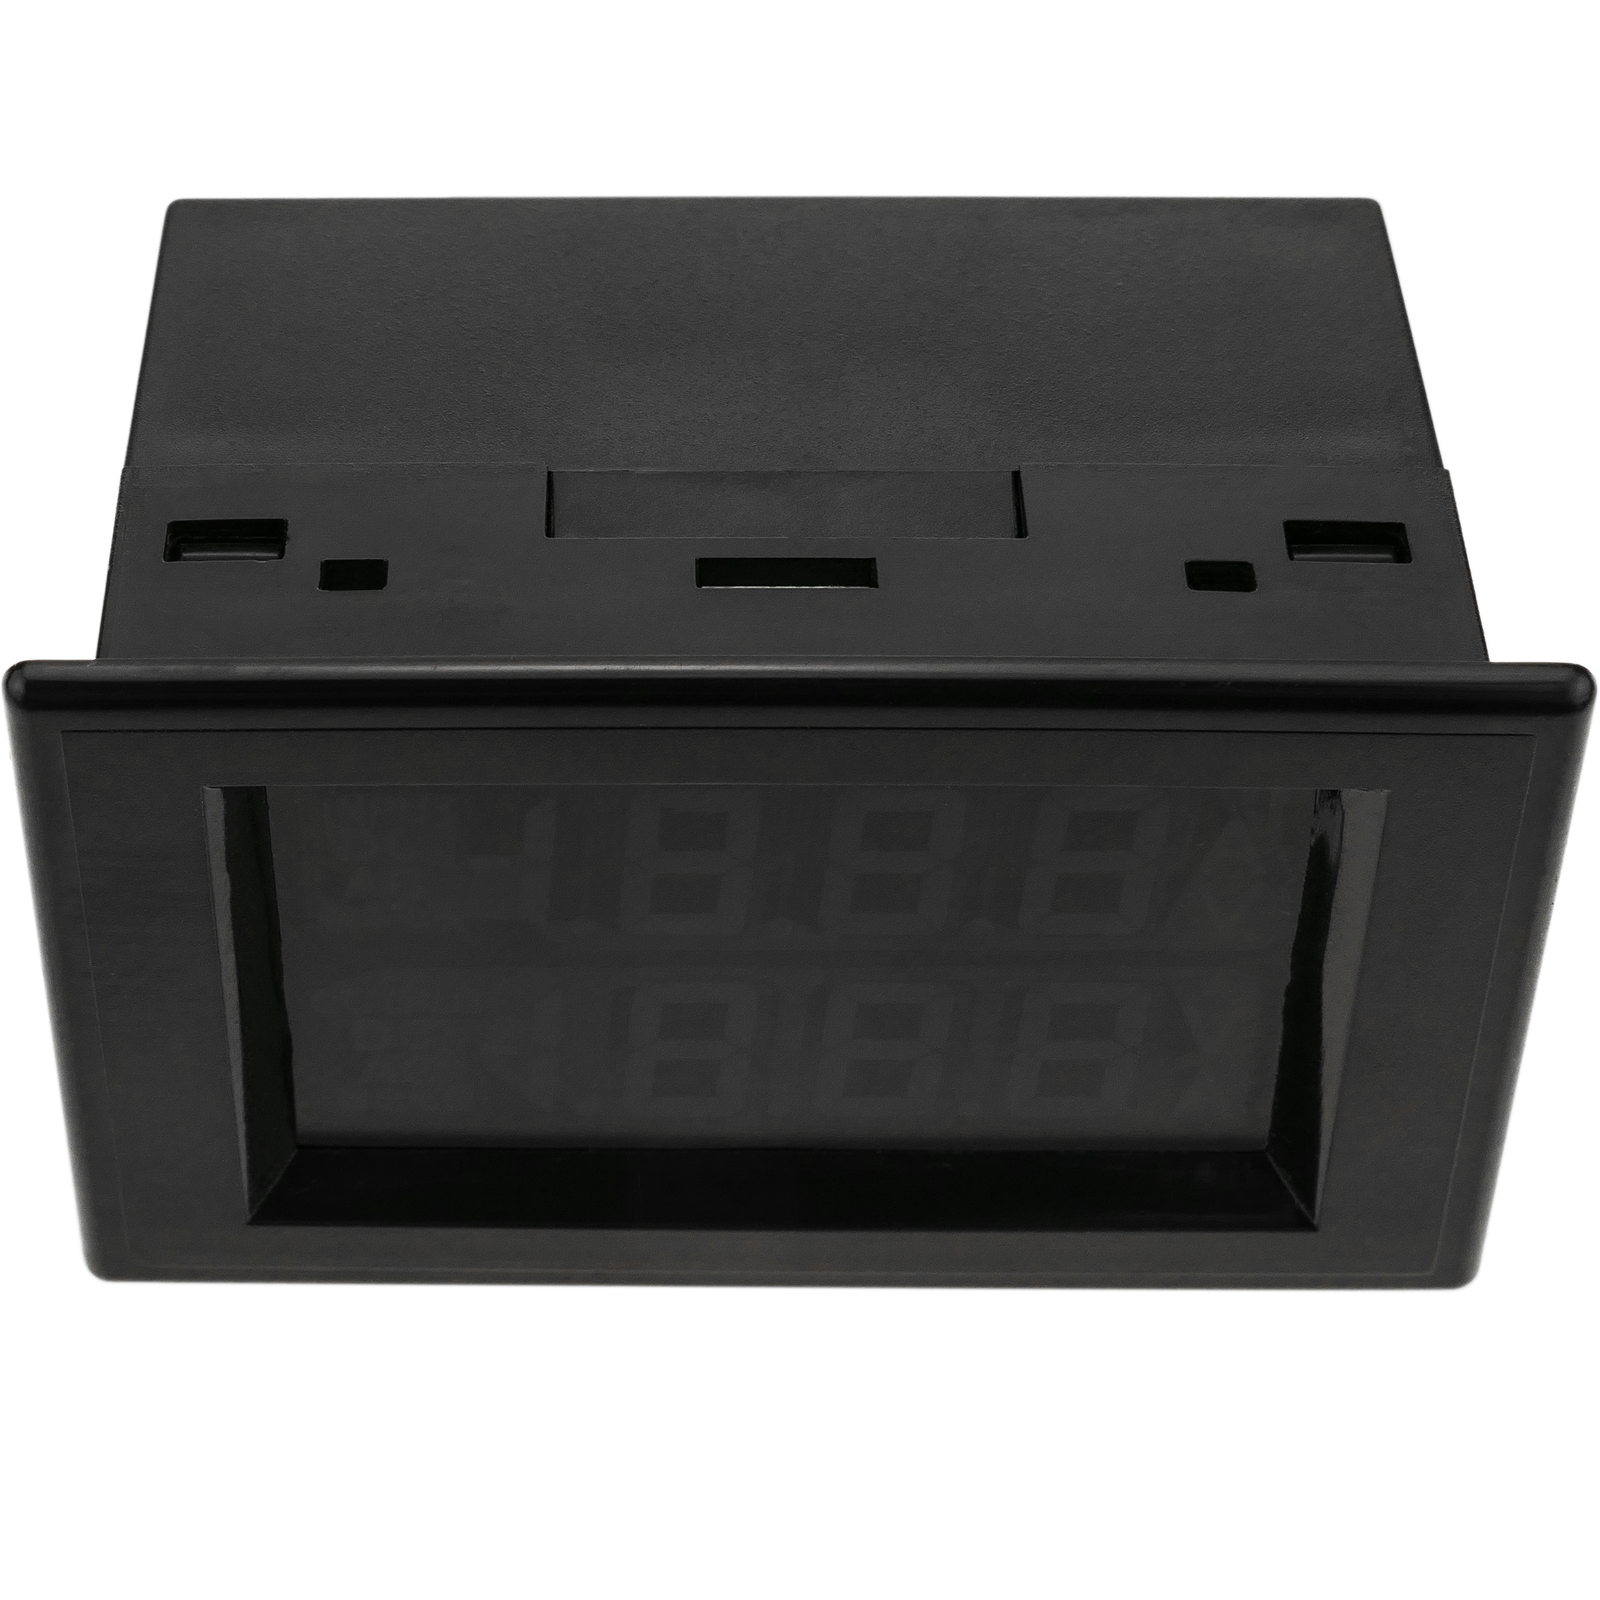 Affichage LCD à 4 chiffres double avec voltmètre 0-10000V et ampèremètre  0-10A - Cablematic